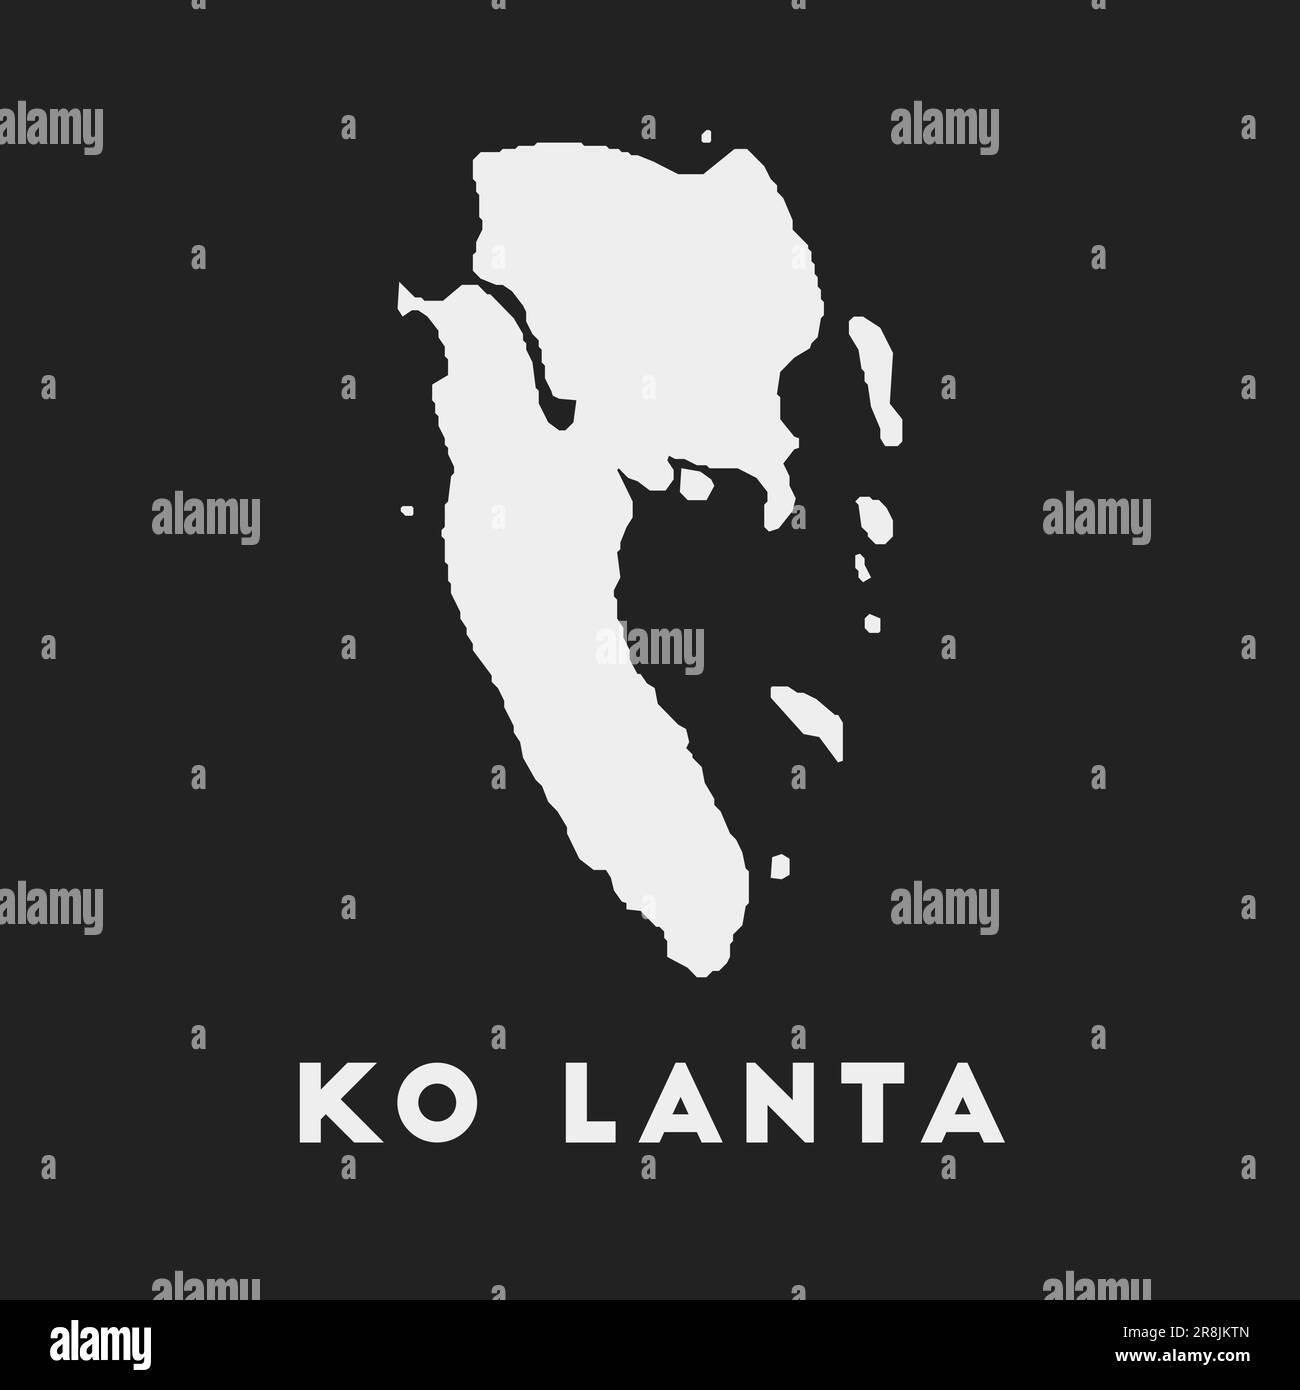 Ko Lanta-Symbol. Inselkarte auf dunklem Hintergrund. Stilvolle Karte von Ko Lanta mit Inselname. Vektordarstellung. Stock Vektor